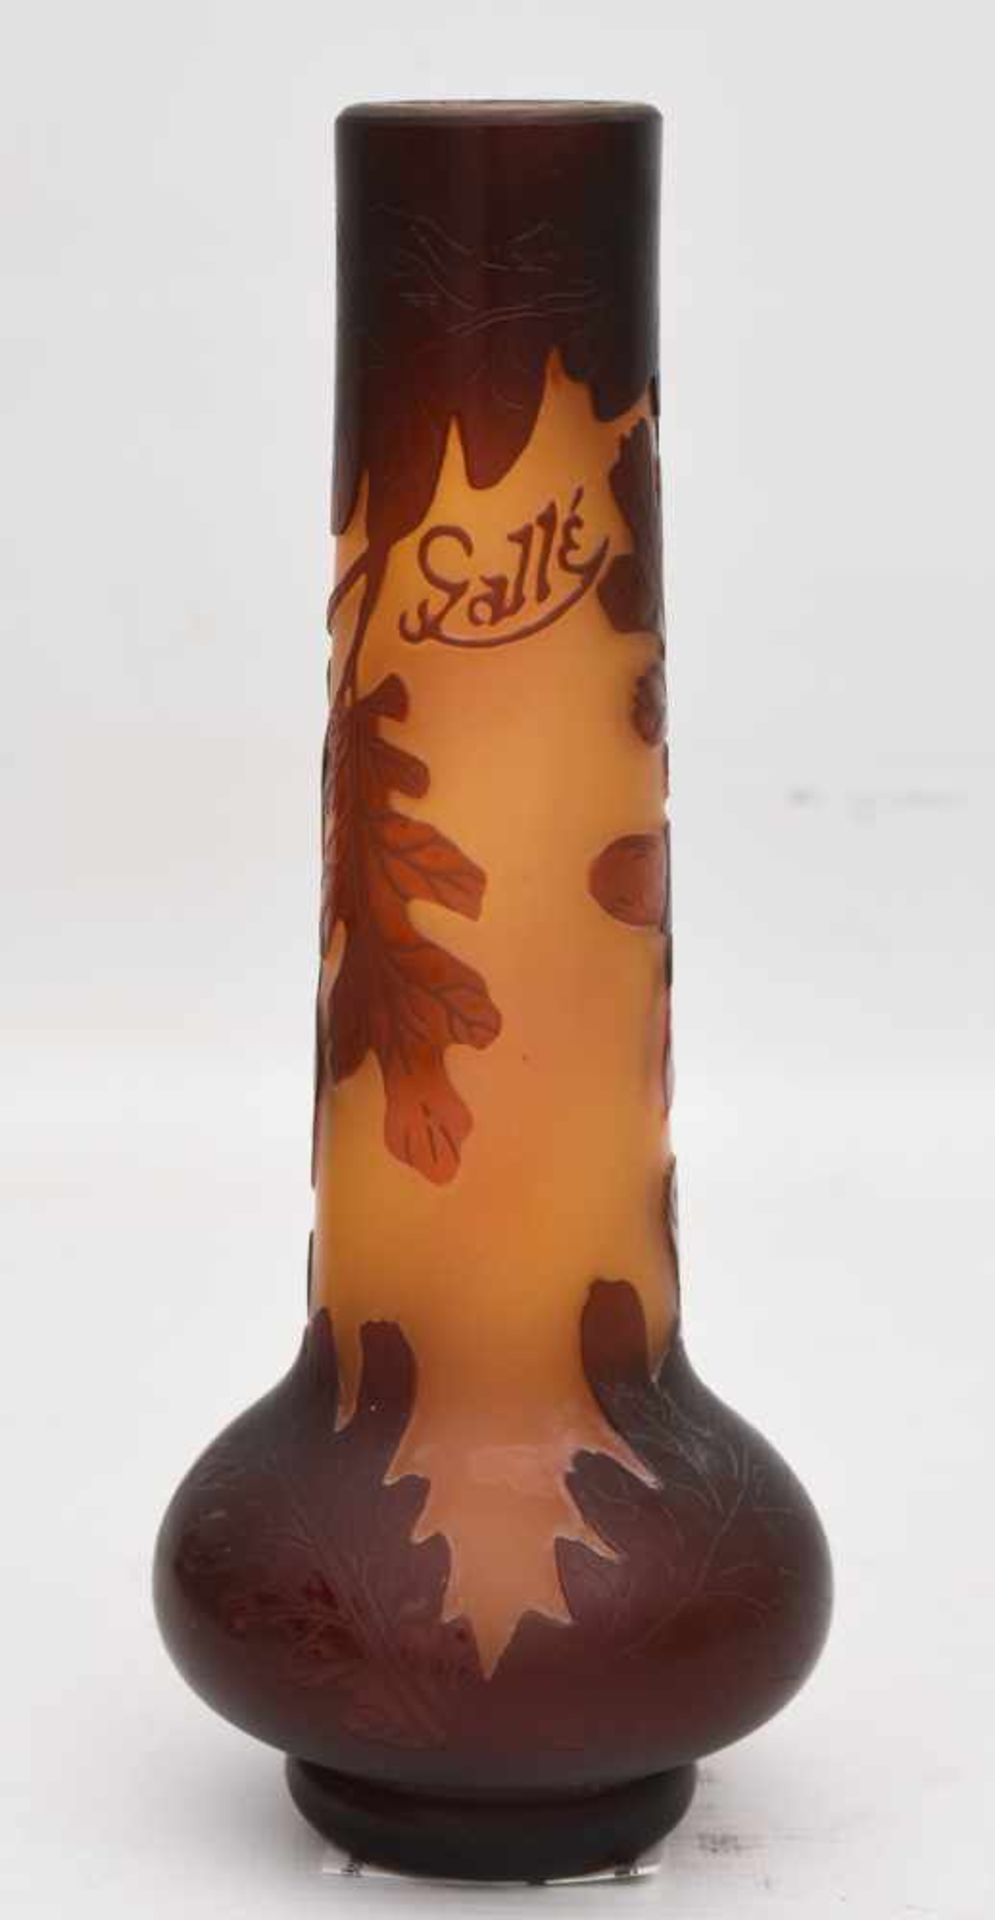 WOHL EMILE GALLÉ, Stangenvase mit Eicheldekor, Frankreich 19. Jh.Orangenes Glas mit braun rotem